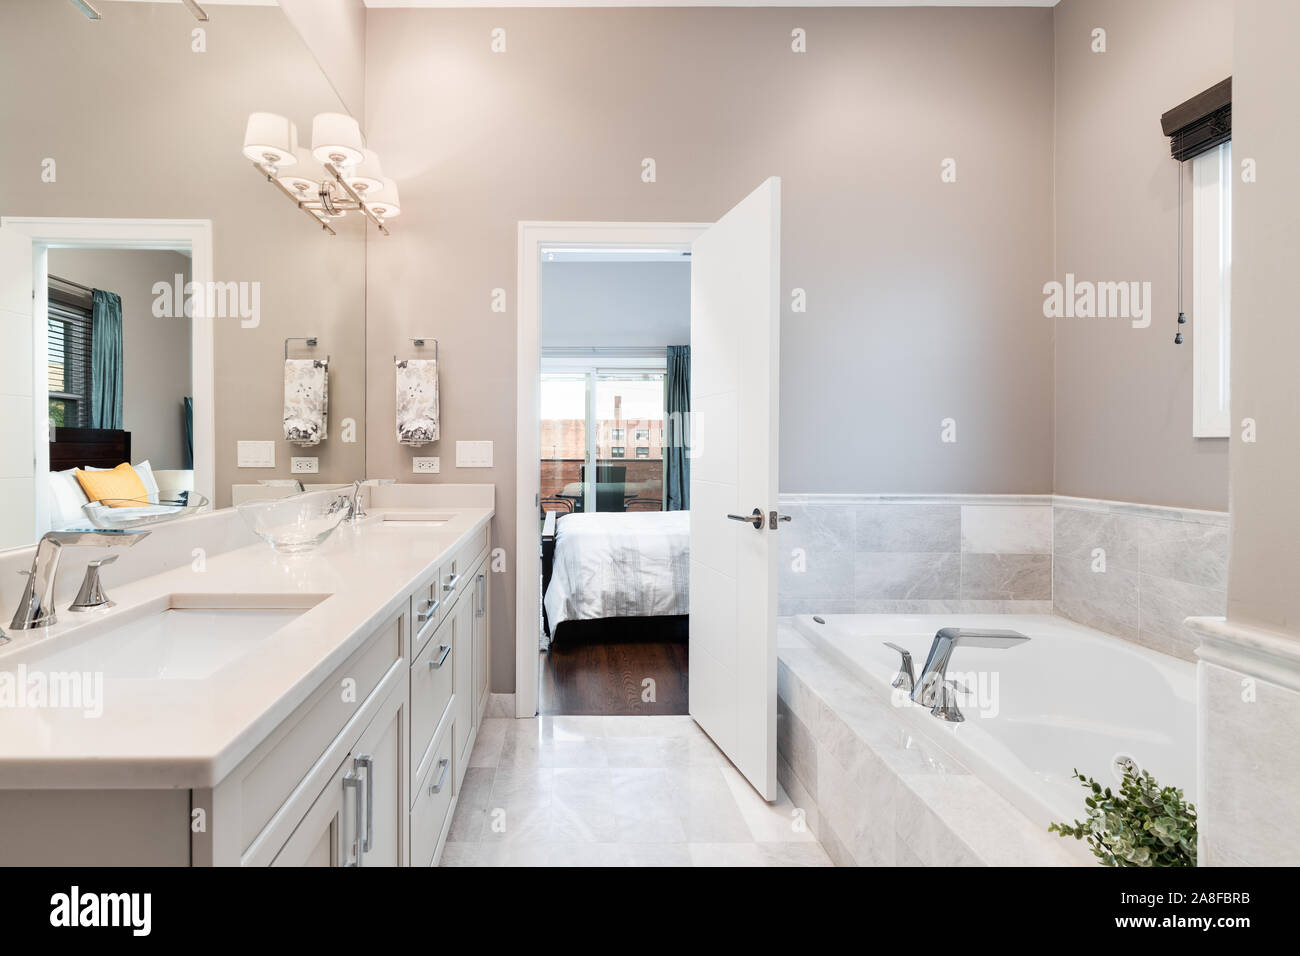 Ein luxuriöses Badezimmer mit einer Badewanne und einem hellen Doppelwaschtisch in Richtung Schlafzimmer. Stockfoto